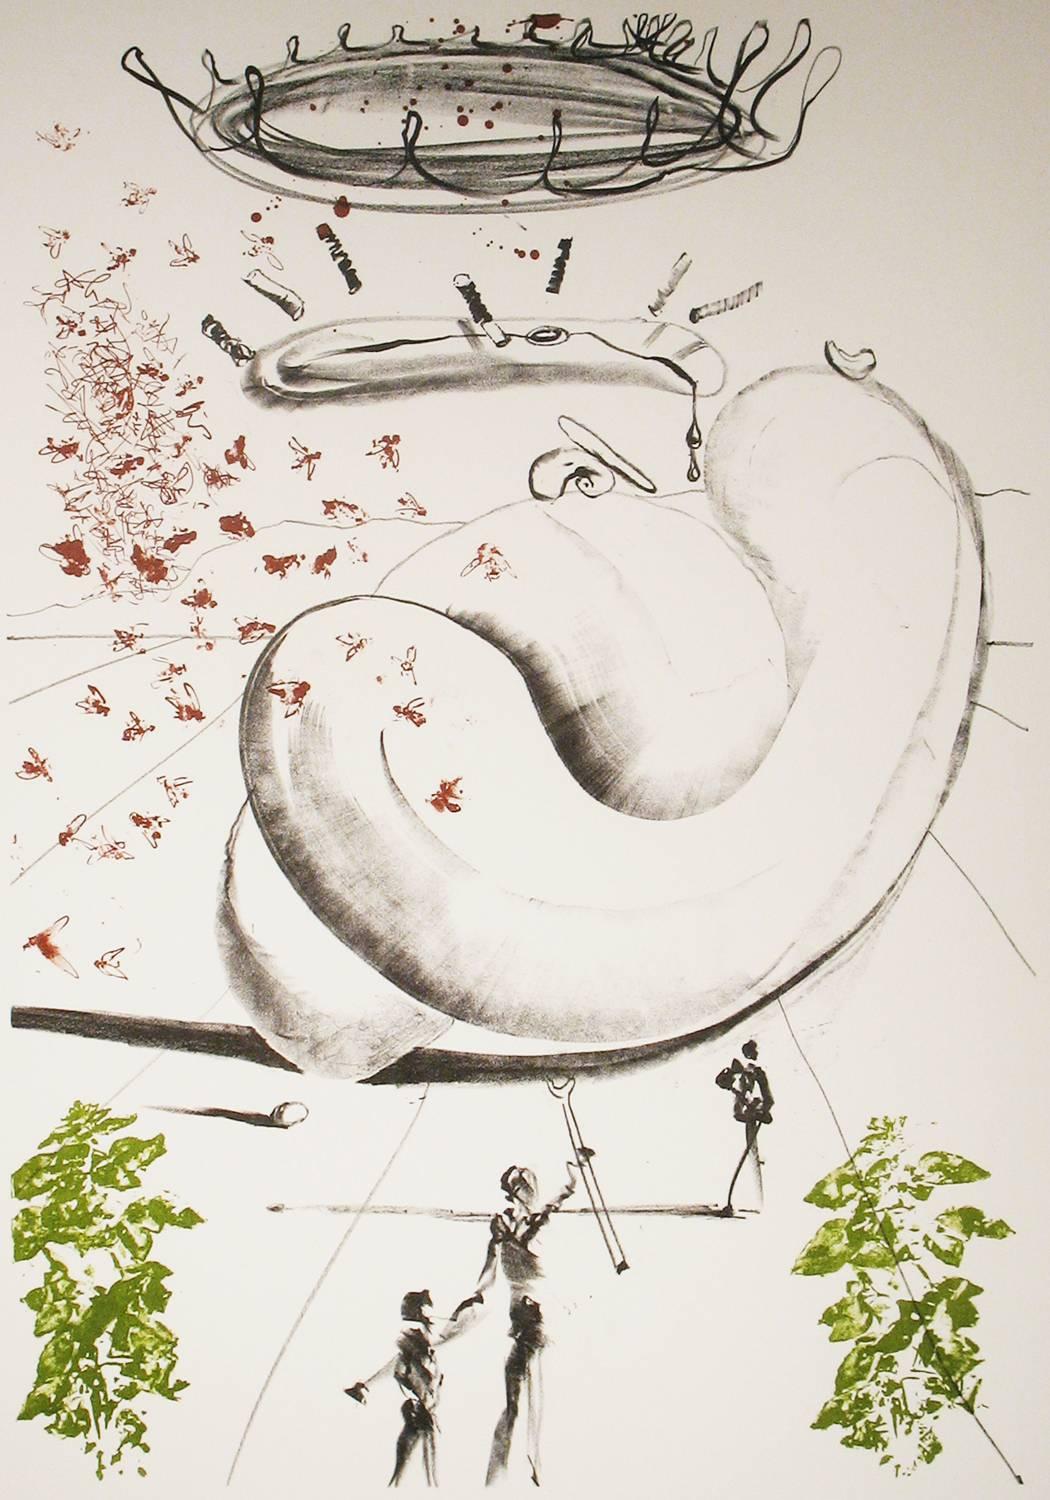 Moscas - Print by Salvador Dalí